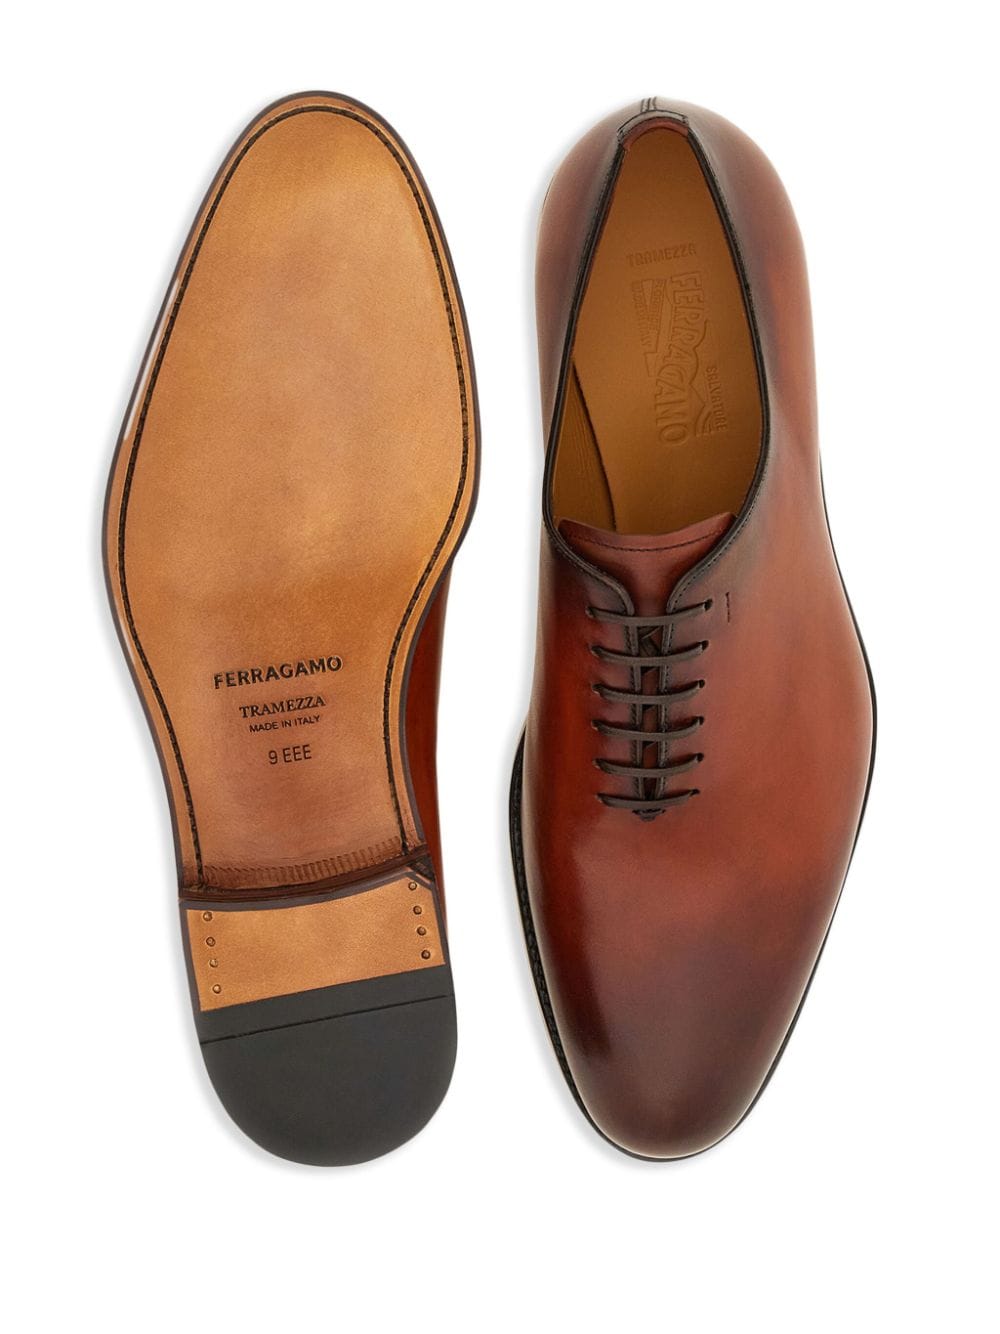 Shop Ferragamo Tramezza Leather Oxford Shoes In Brown